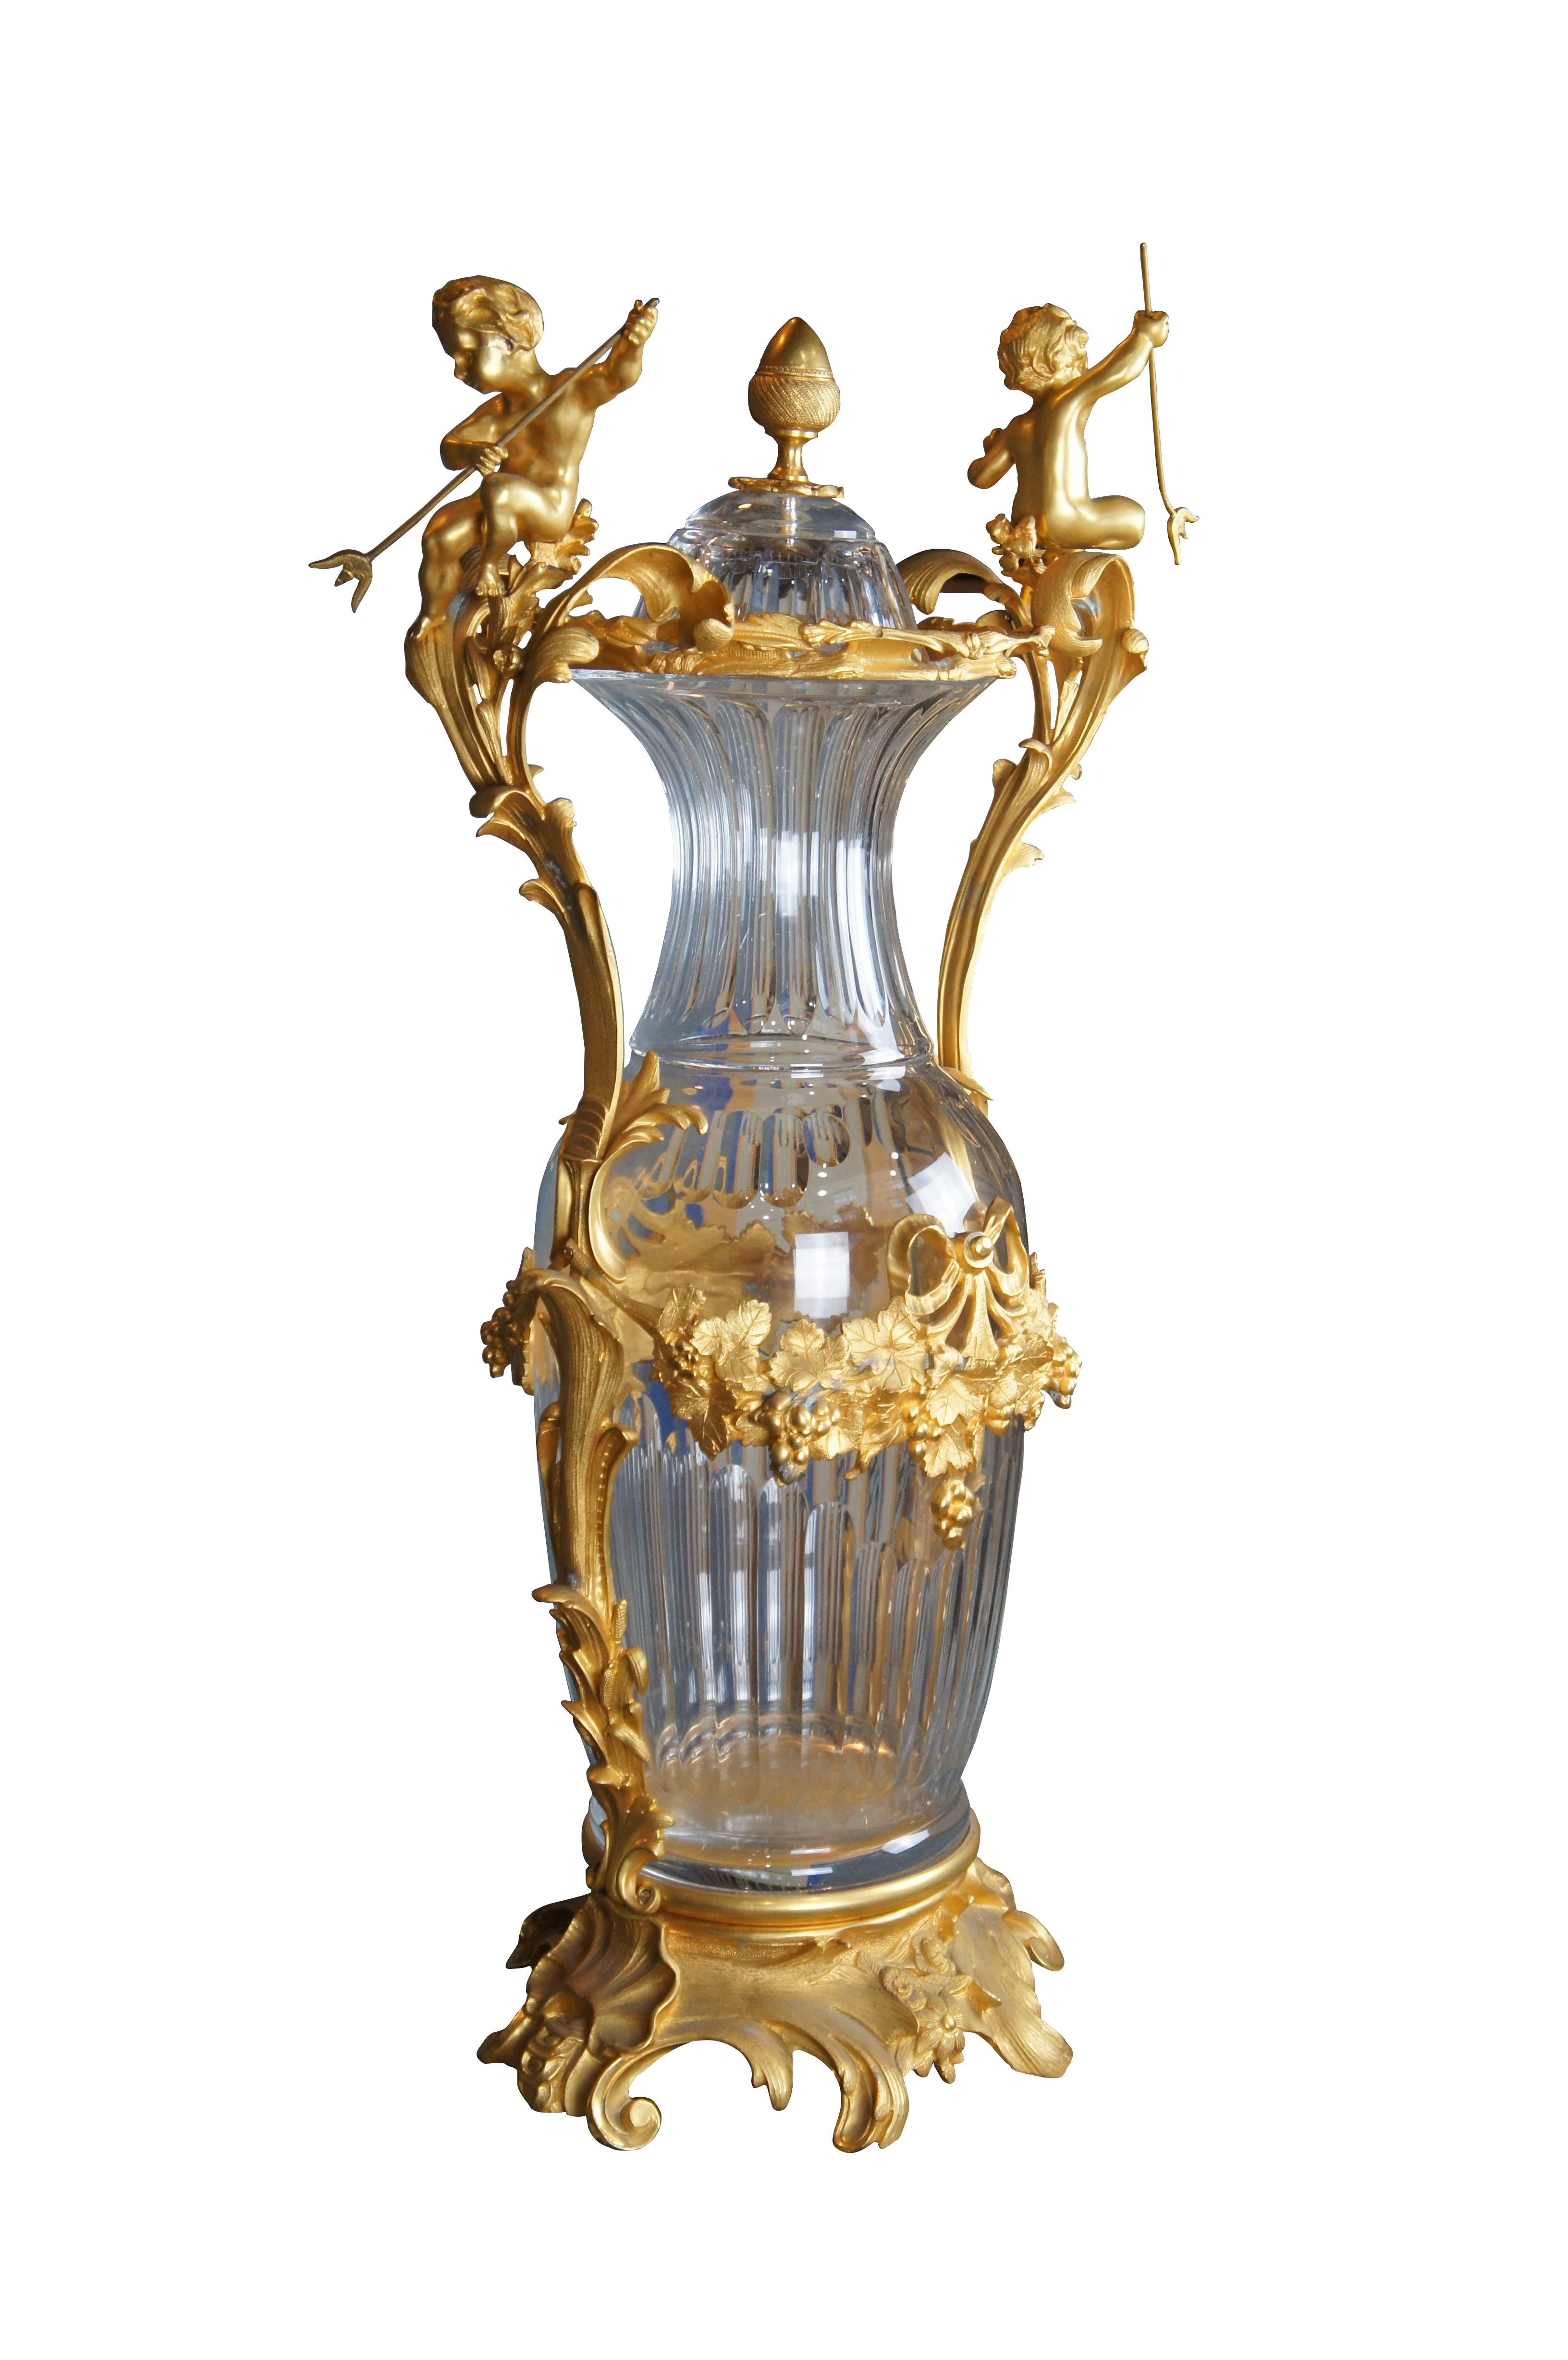 Eric Stepnewski Tafelaufsatz / Vase, Ende 20. Jahrhundert. Gefertigt aus gemeißeltem Messing und mit 24-karätigem Gold und Kristall veredelt. Gehäuse aus geschliffenem Kristall, verziert mit 2 Putten, die einen Dreizack halten, und Girlanden aus